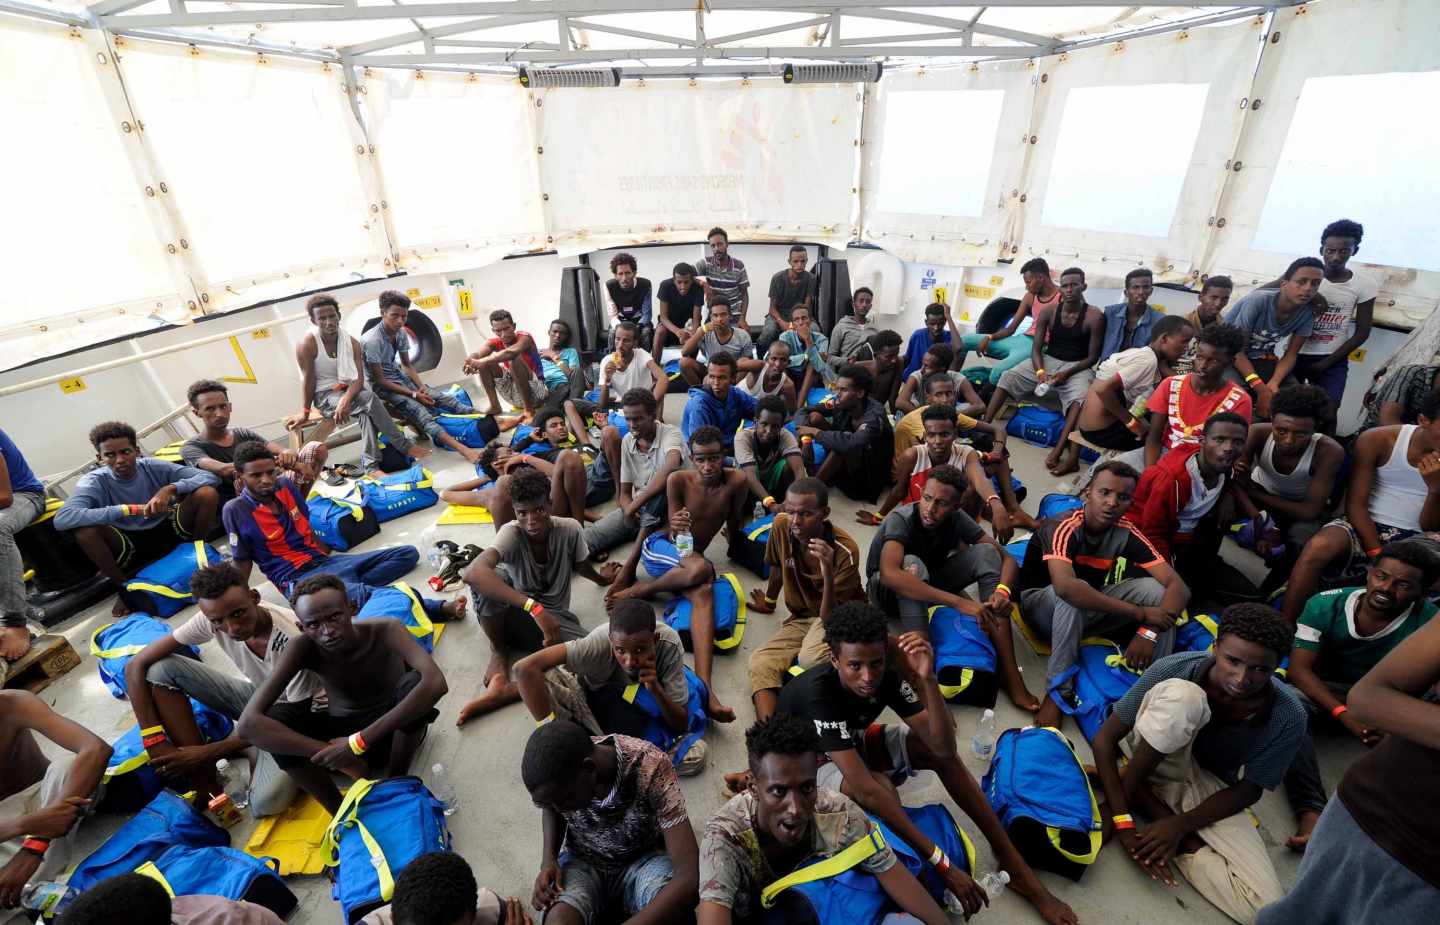 Seis países se repartirán los migrantes del Aquarius, que atracará en Malta